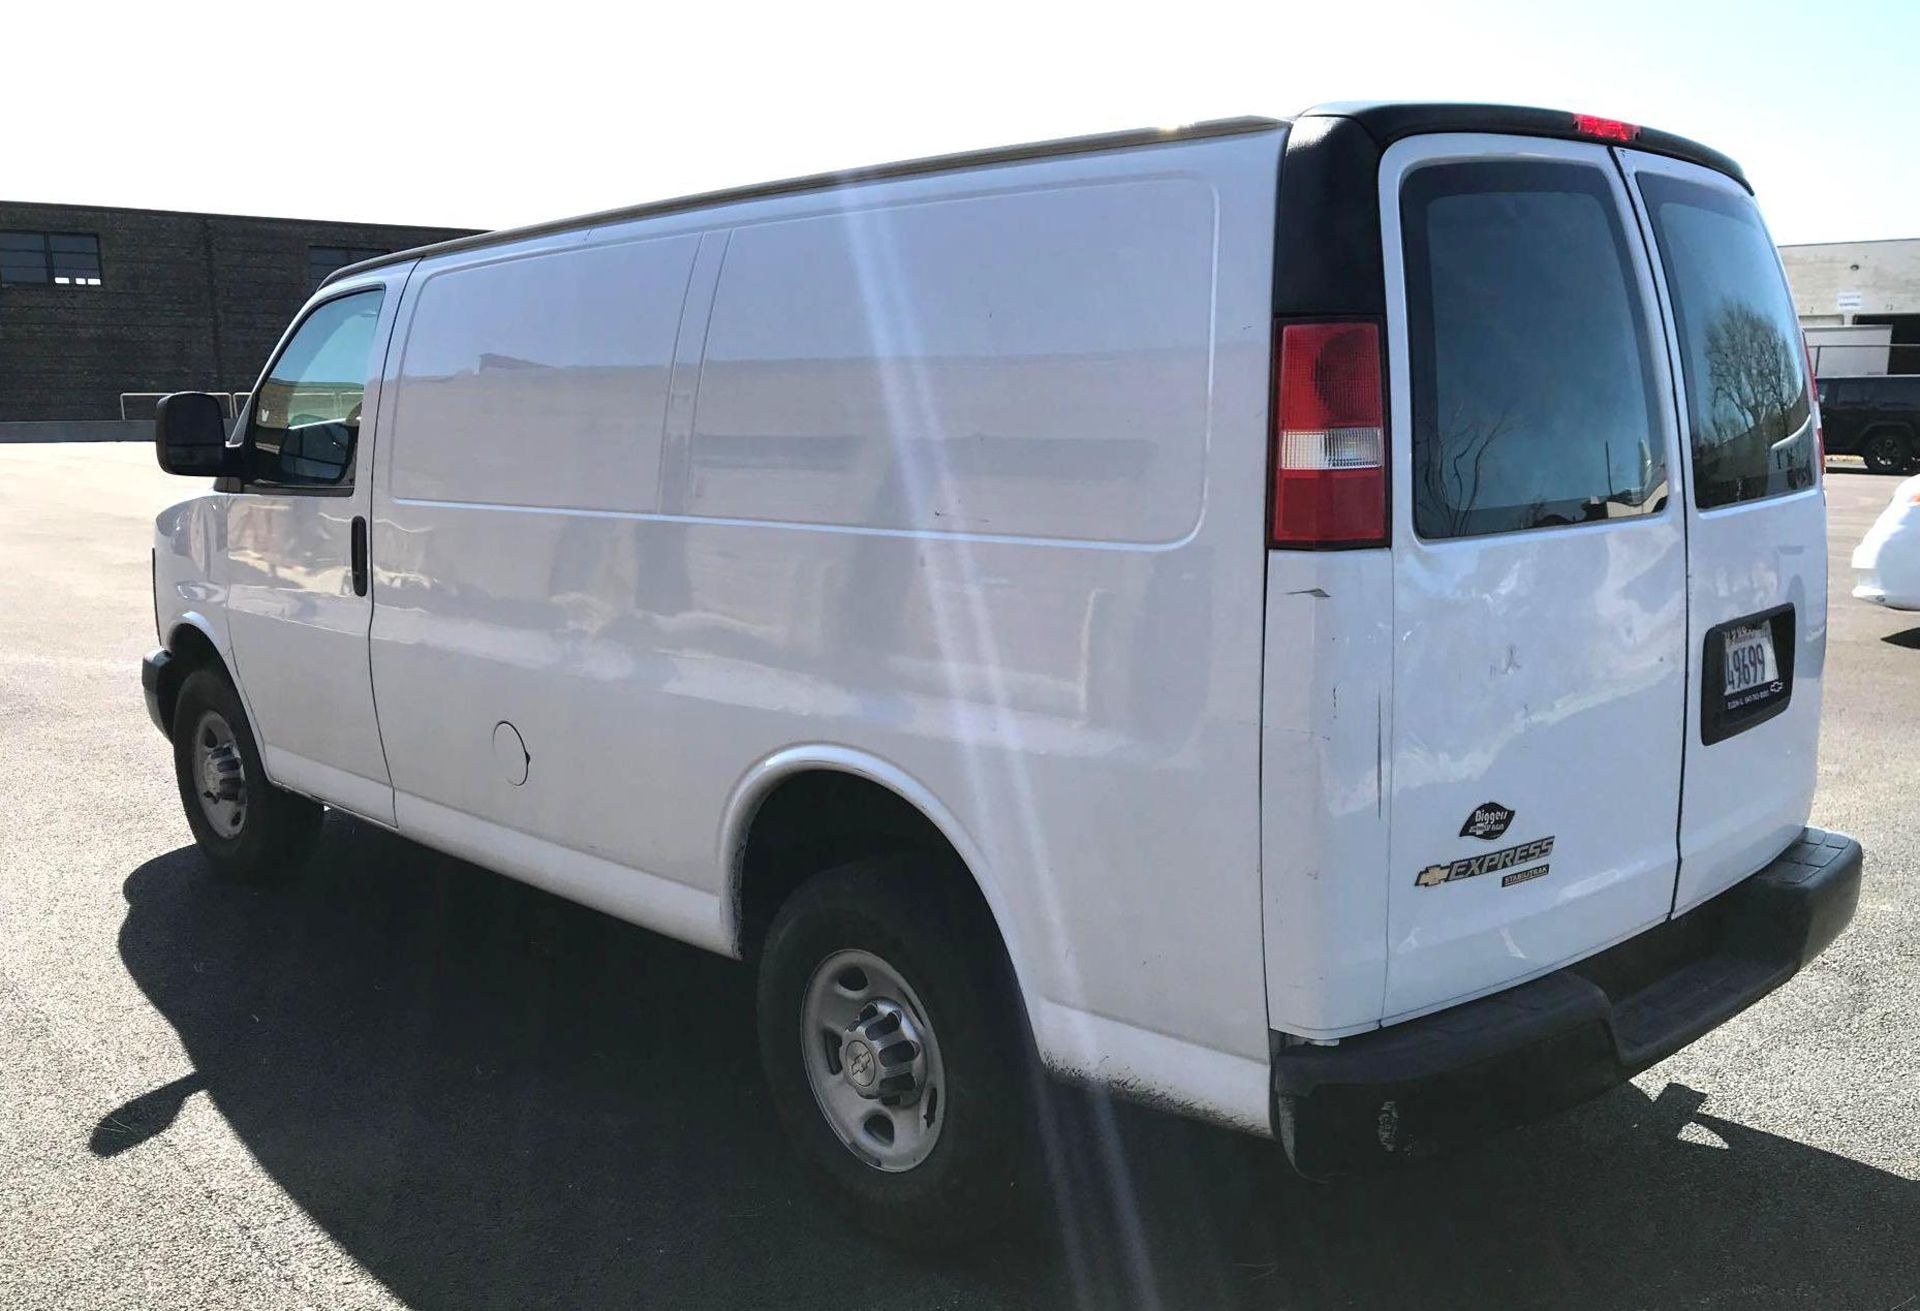 2015 Chevrolet 2500 Express Cargo Van - Image 5 of 35